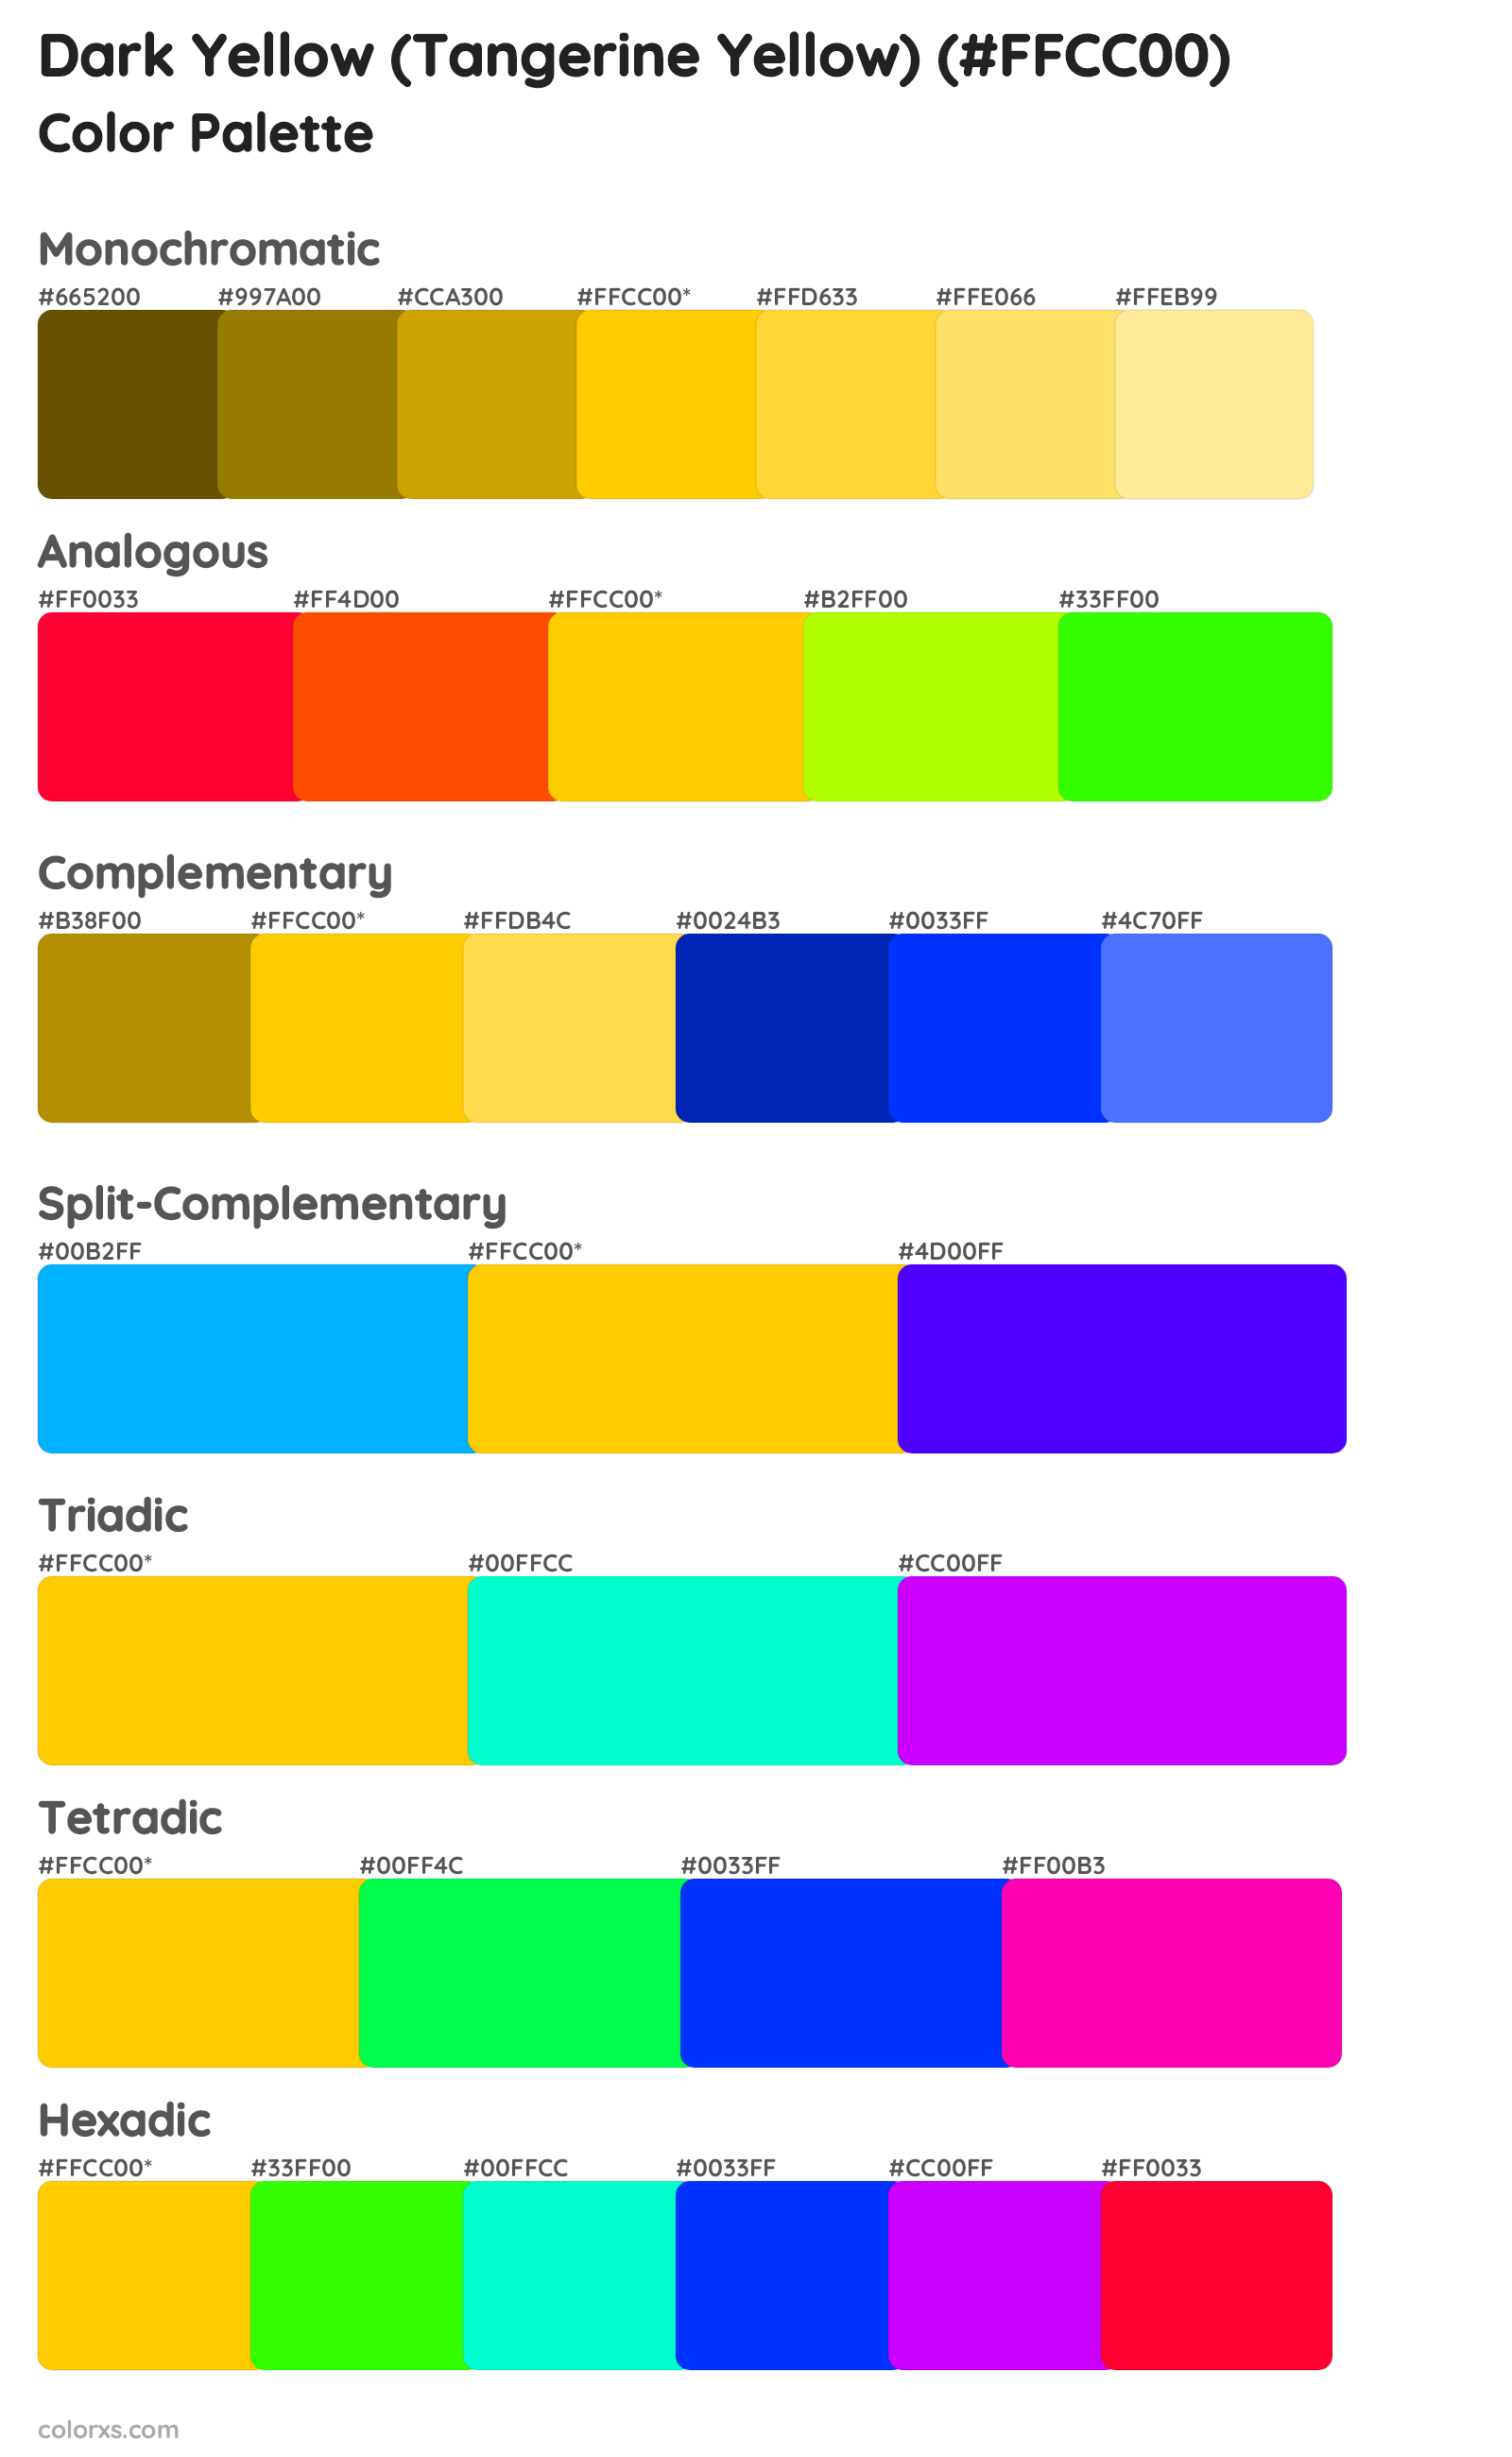 Dark Yellow (Tangerine Yellow) Color Scheme Palettes